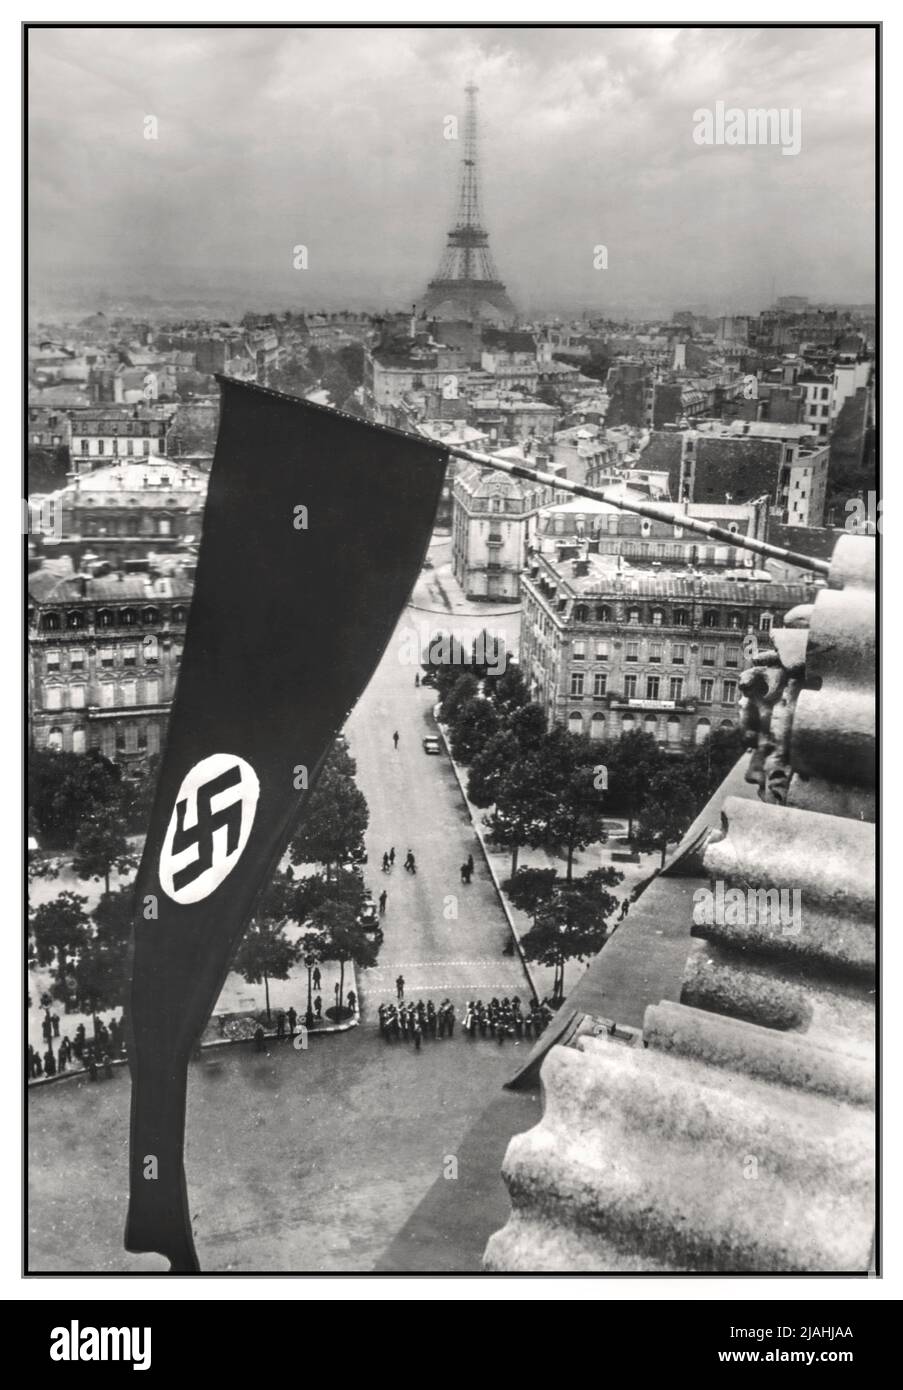 PARIS WW2 Nazi-Besetzung Paris Frankreich mit großem Banner Swastika fliegt über Paris mit Eiffelturm hinter Paris Frankreich Juni 1940 Paris begann im September 1939, als Nazi-Deutschland und die Sowjetunion Polen Angriffen, für den Krieg zu mobilisieren. Doch am 10. Mai 1940 griffen die Deutschen Frankreich an und besiegten schnell die französische Armee. Die französische Regierung verließ Paris am 10. Juni, die Deutschen besetzten die Stadt am 14. Juni. Während der Besatzung zog die französische Regierung nach Vichy, und Paris wurde vom deutschen Nazi-Militär und von französischen Beamten regiert, die von den Deutschen genehmigt wurden. Stockfoto